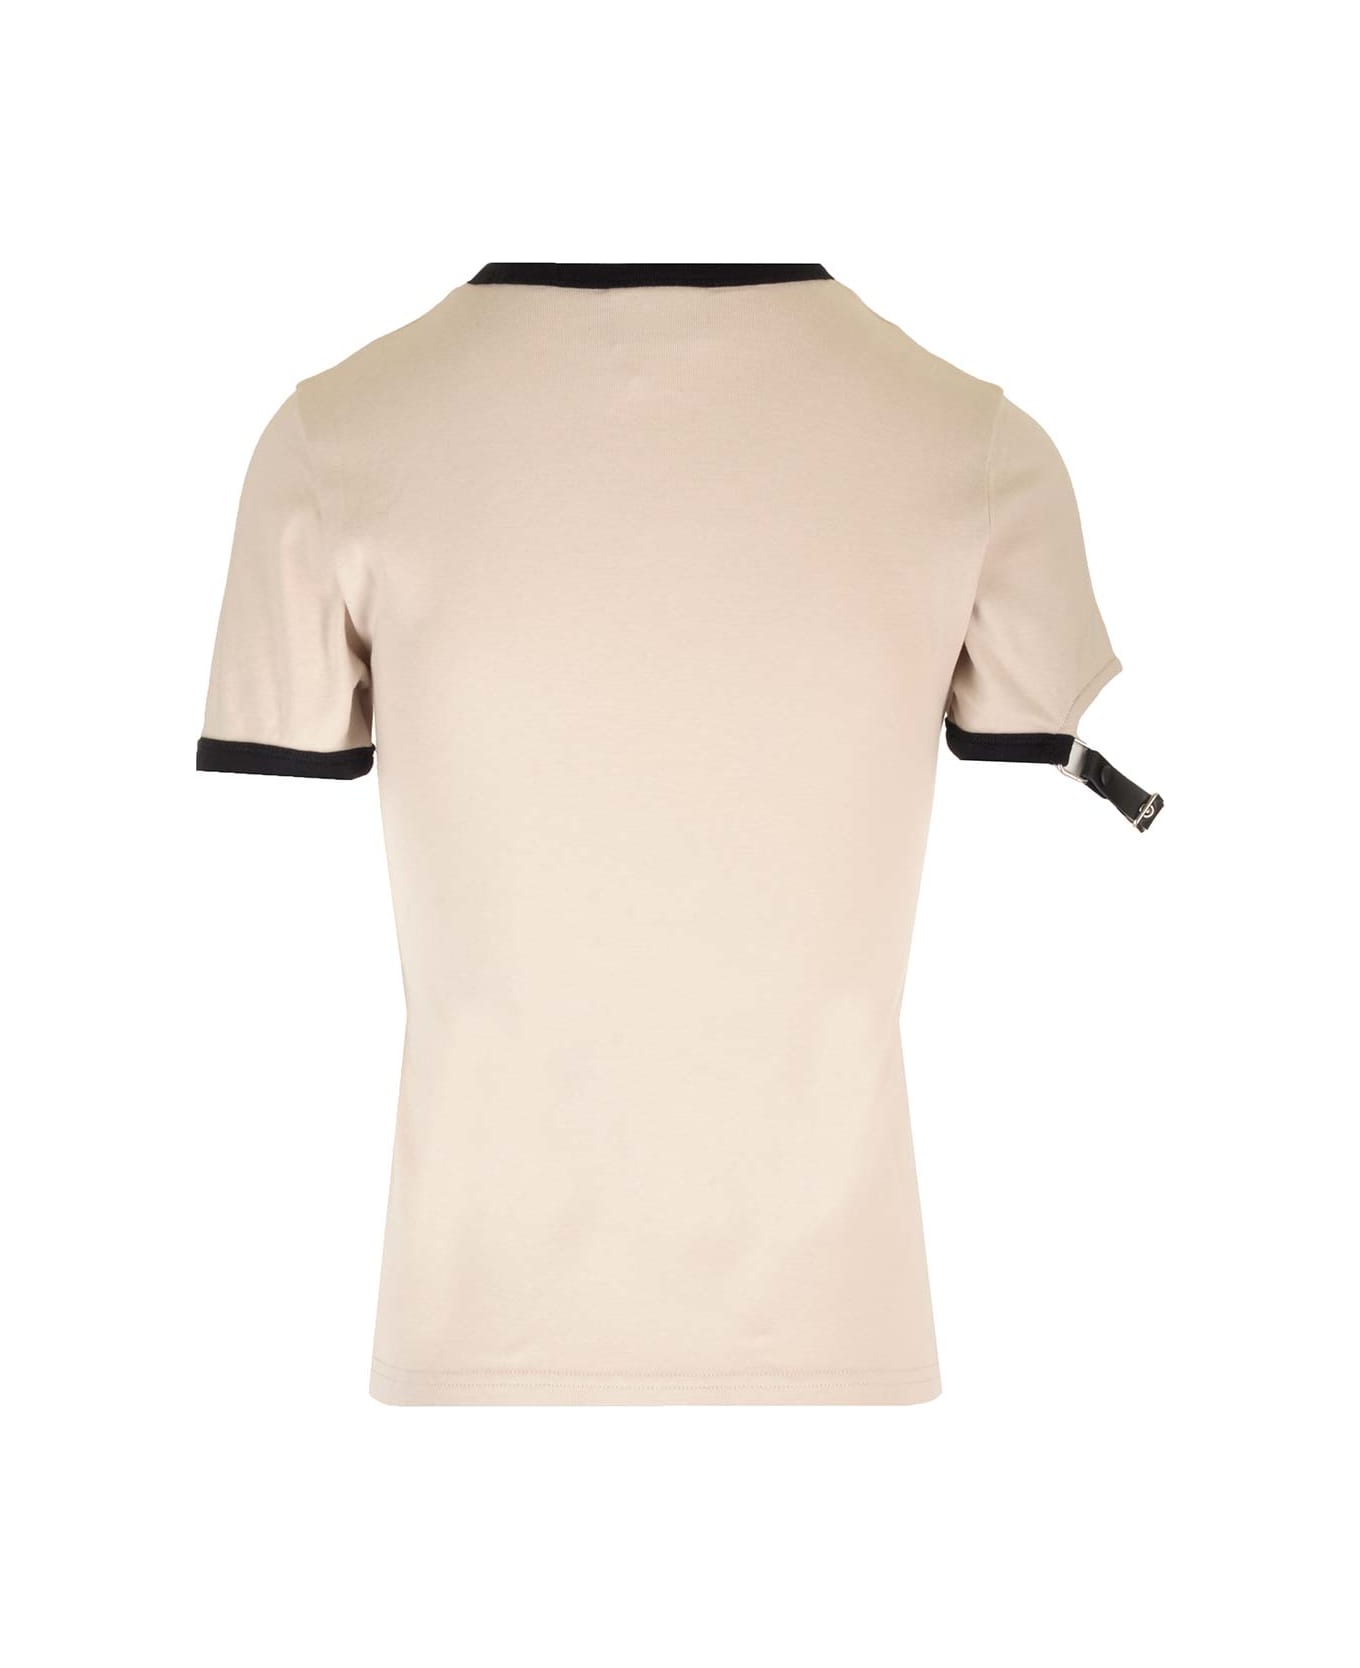 Courrèges Strap Detail T-shirt - LIME STONE / BLACK Tシャツ